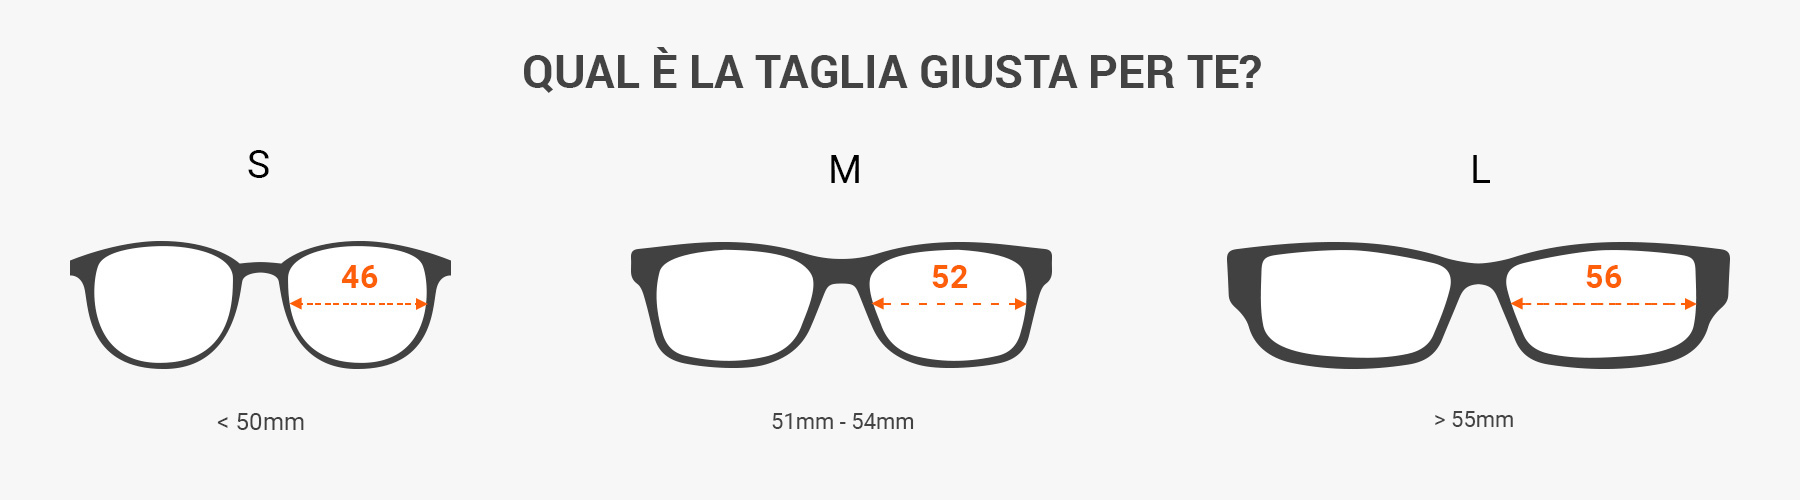 come leggere le misure degli occhiali da sole - misura gli occhiali da sole con un righello